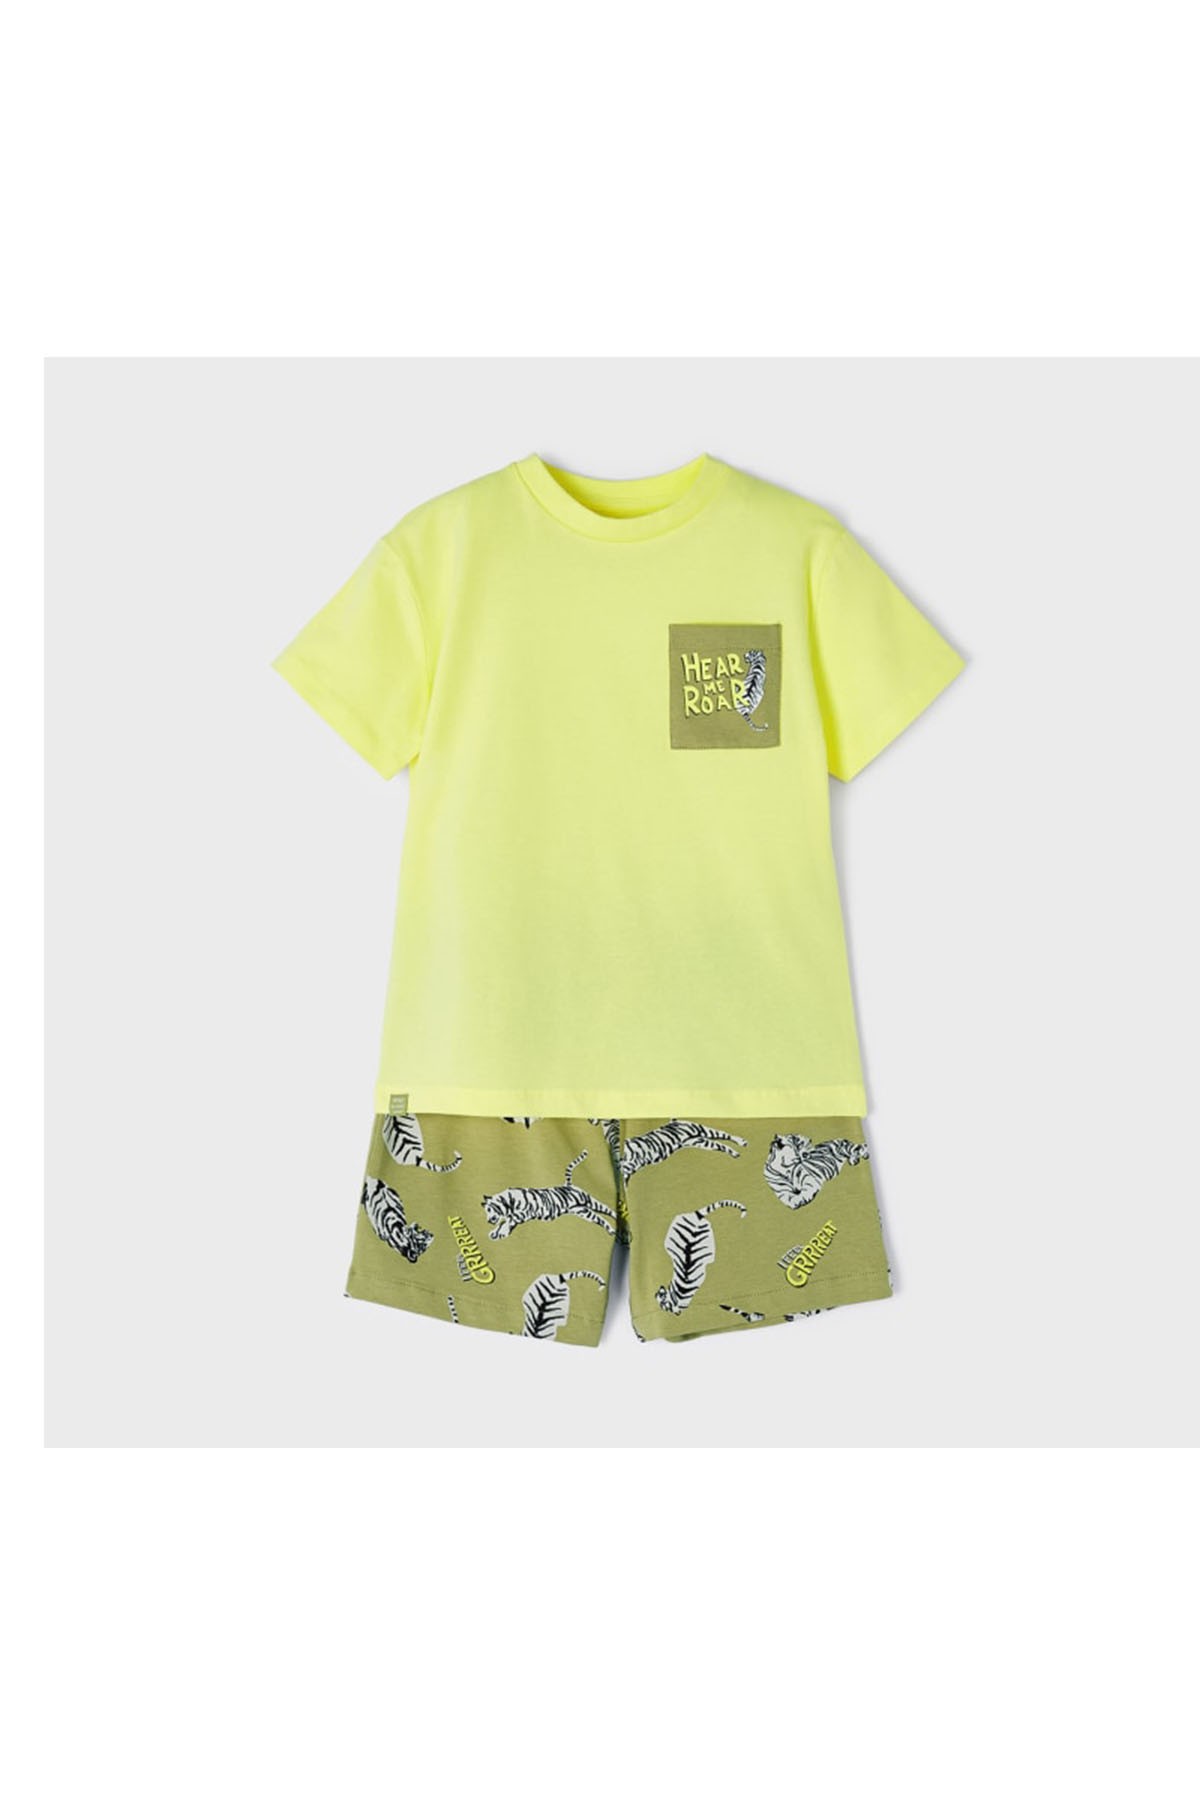 Mayoral Erkek Çocuk Pijama Takımı Şortlu Yeşil